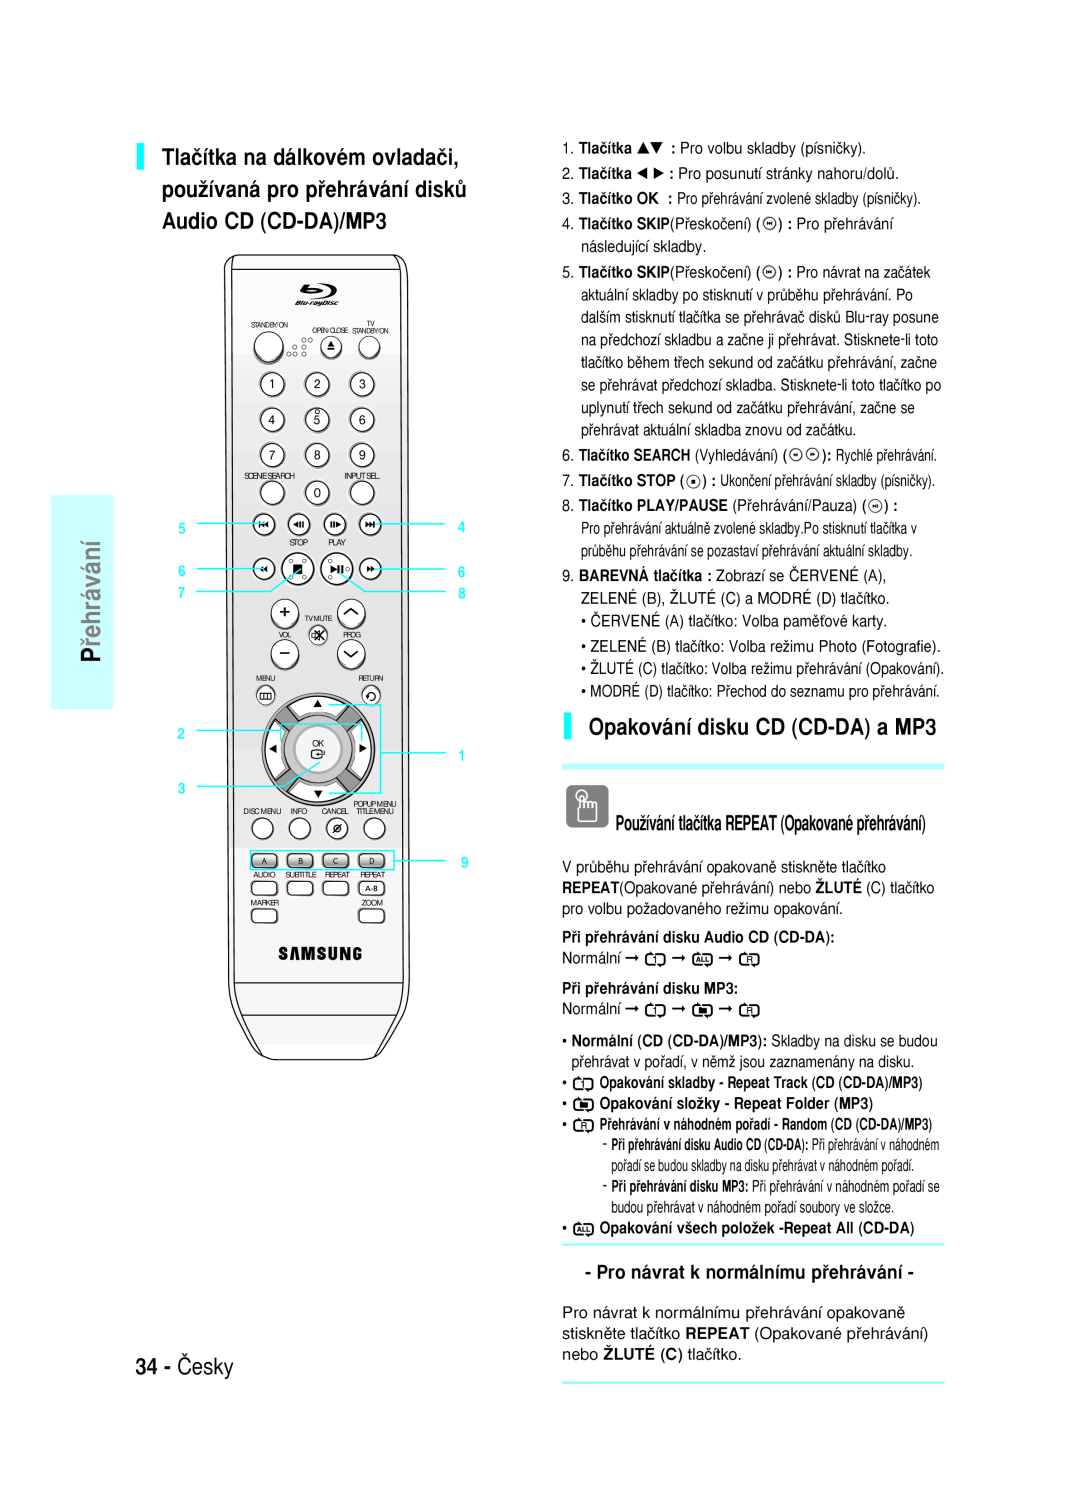 Samsung BD-P1000/XEL manual 34 - âesky, Opakování disku CD CD-DA a MP3, Pro návrat k normálnímu pﬁehrávání, ﬁehráváníP 